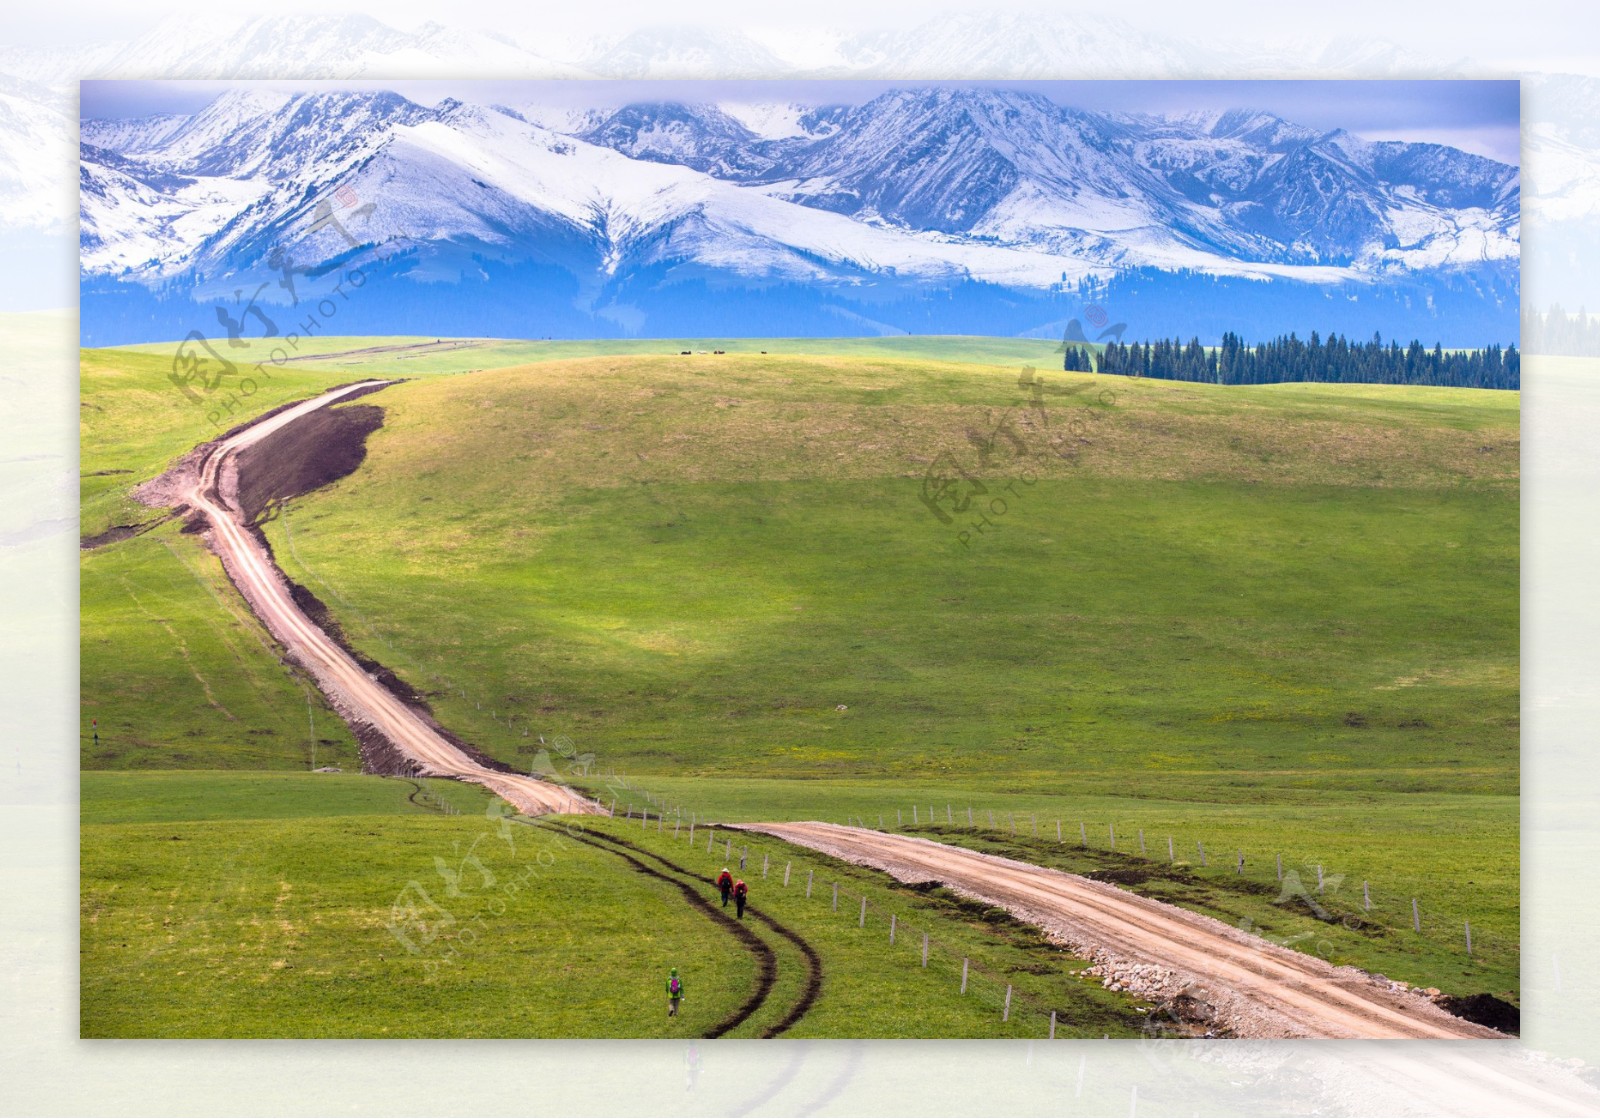 新疆草原风景图片